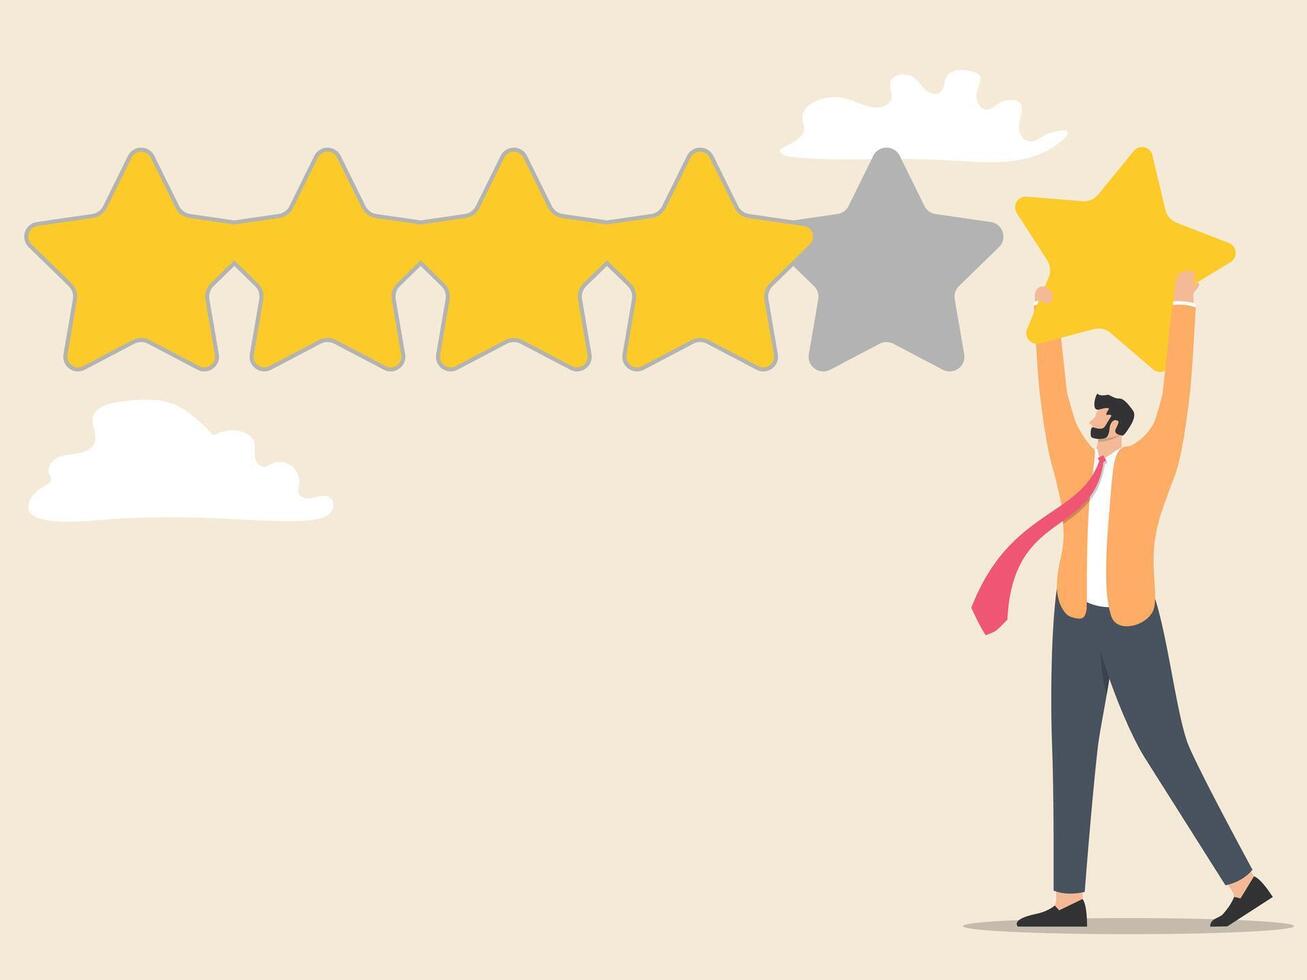 Kunde Feedback mit Star Bewertung, Benutzer Erfahrung oder Klient Zufriedenheit, Meinung zum Produkte und Dienstleistungen, Rezension Bewertung oder Auswertung Konzept. vektor